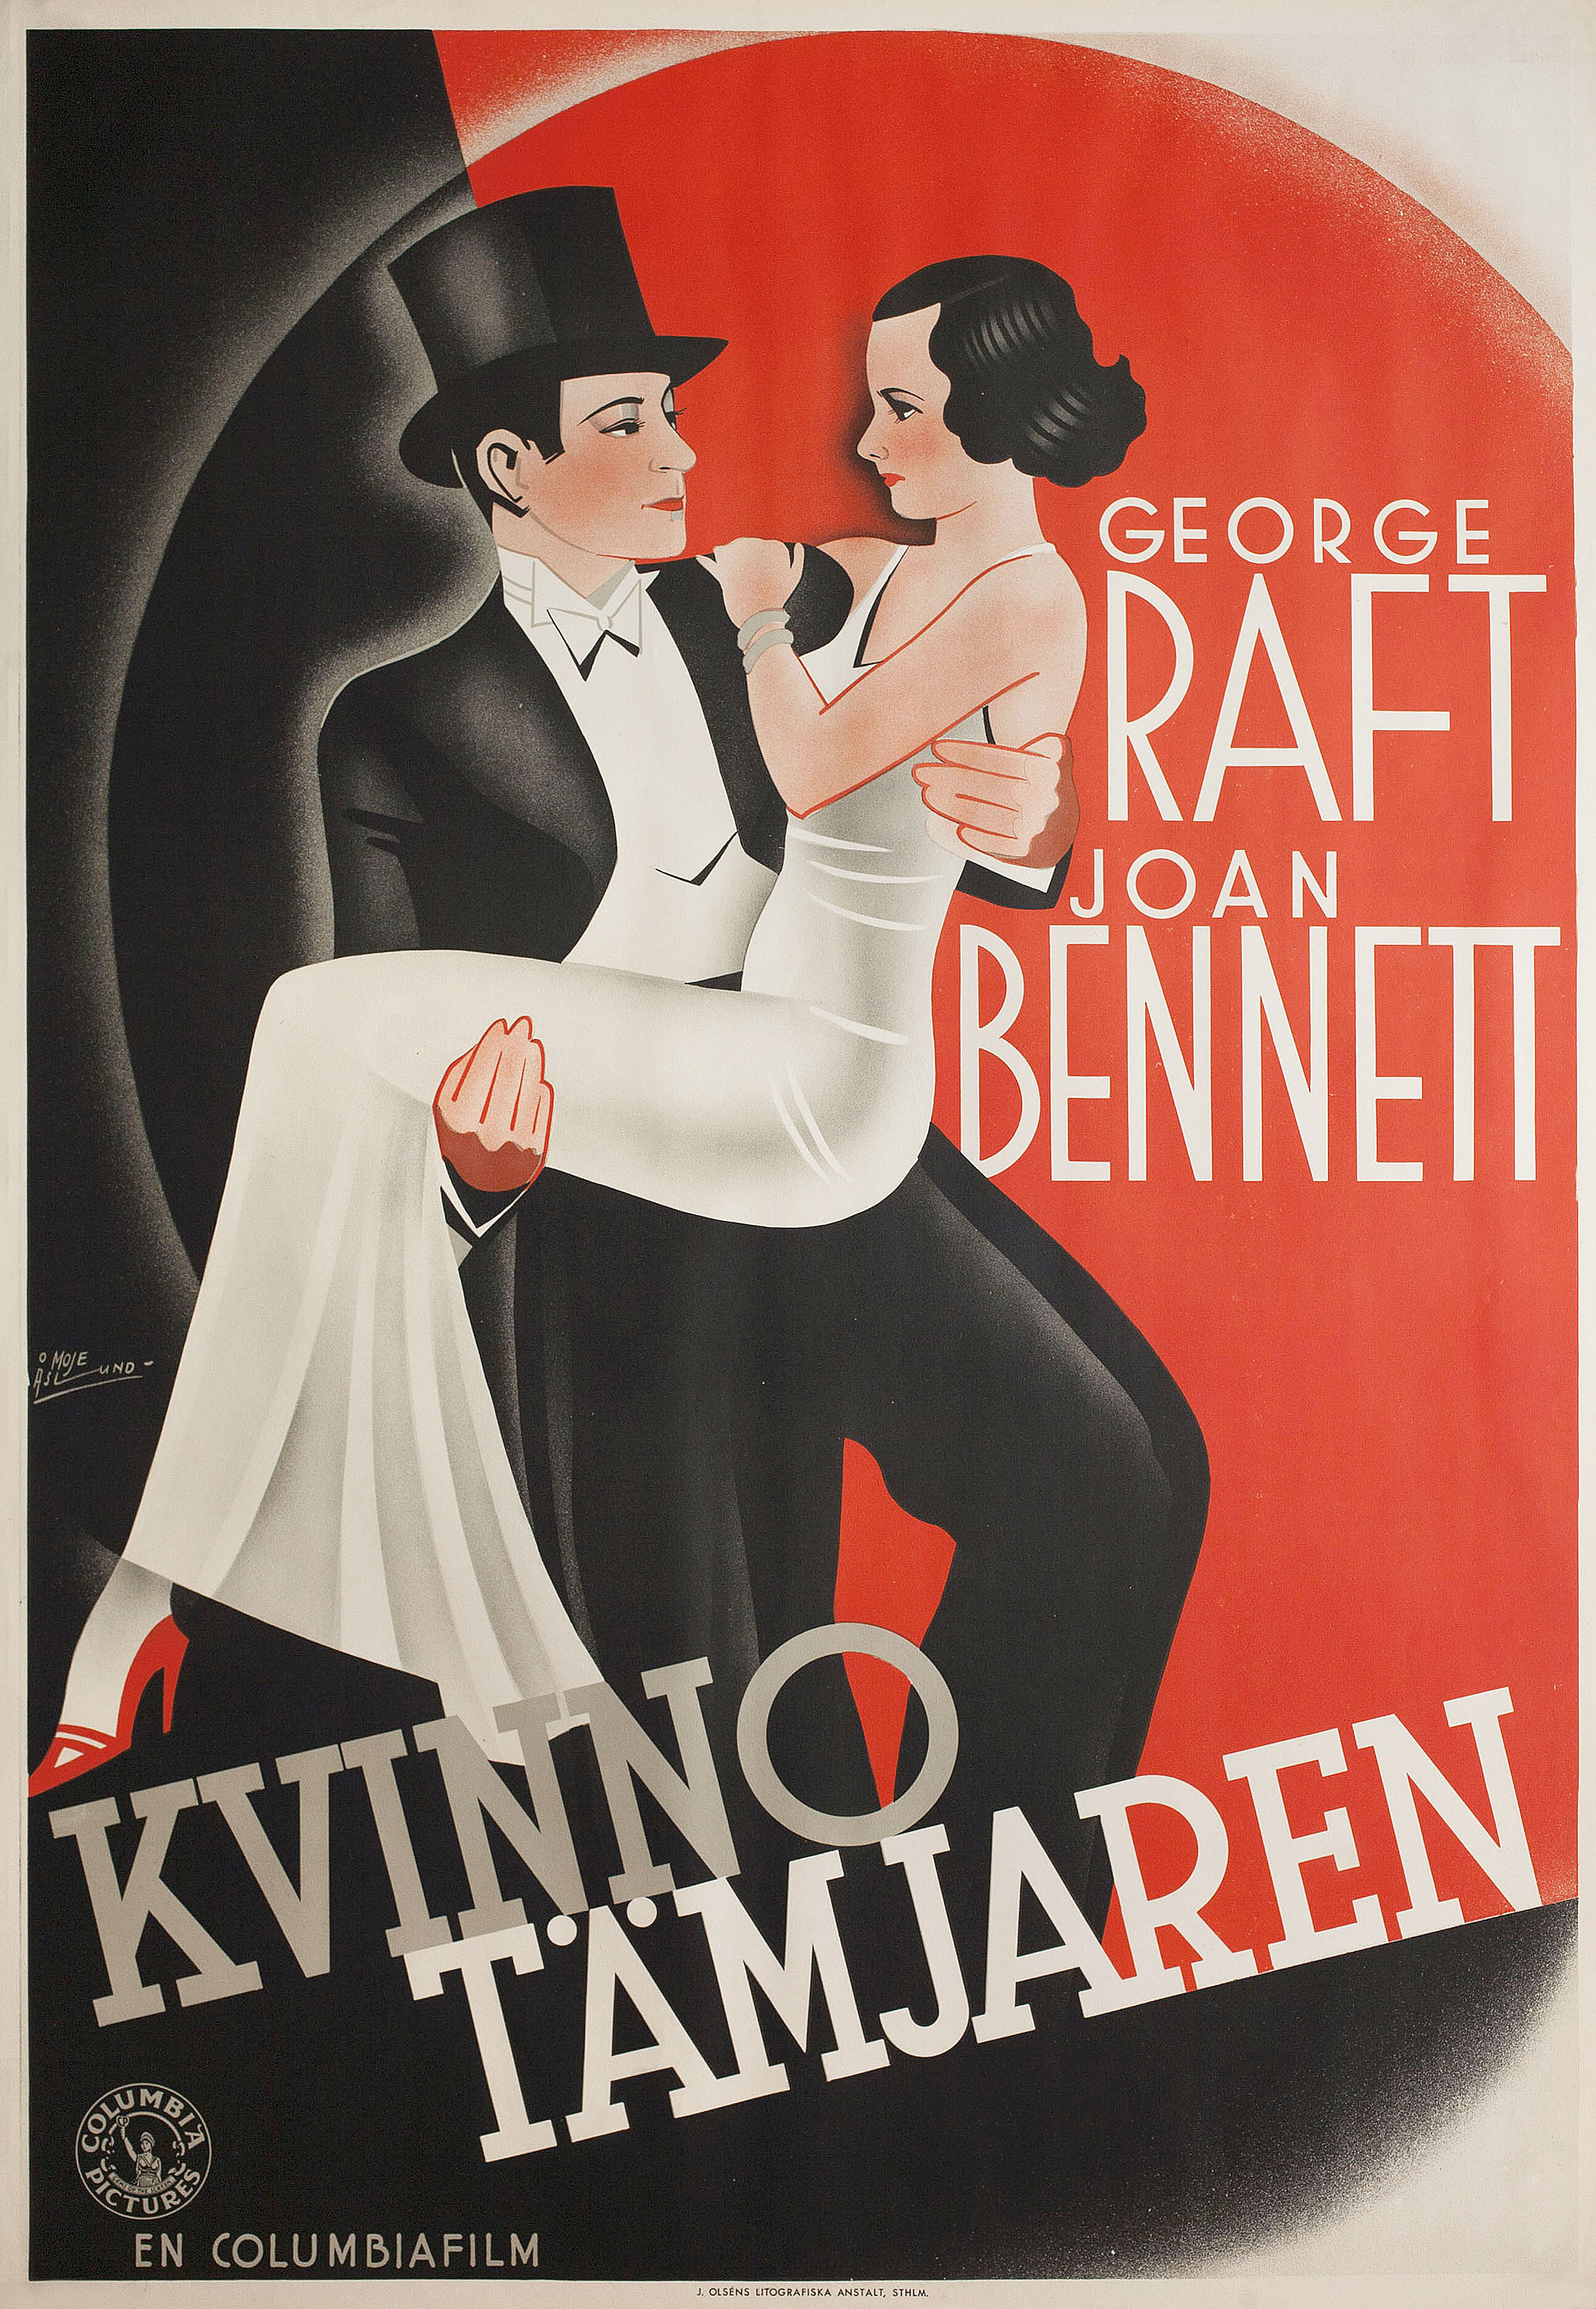 Она не могла взять это (She Couldnt Take It, 1935), режиссёр Тэй Гарнетт, постер к фильму в стиле ар-деко (Швеция, 1935 год), автор Джон Мориц Асл